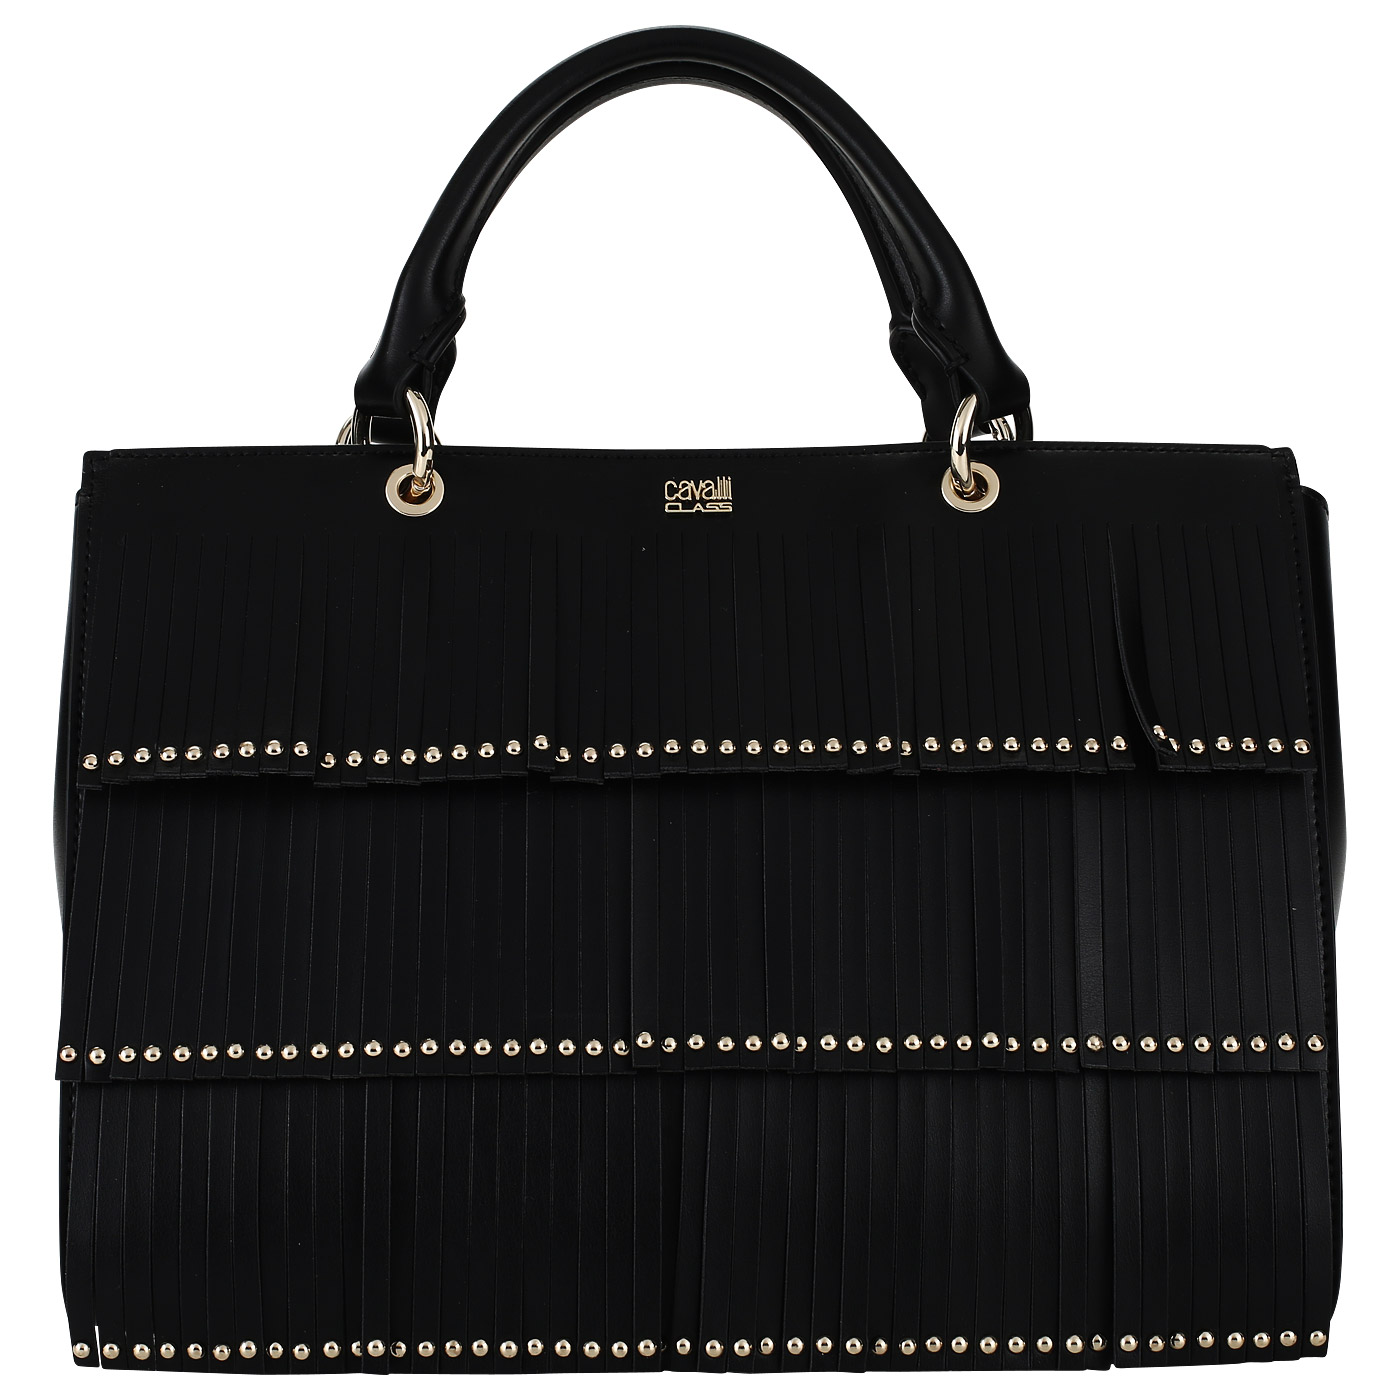 Cavalli Class Женская сумка черного цвета